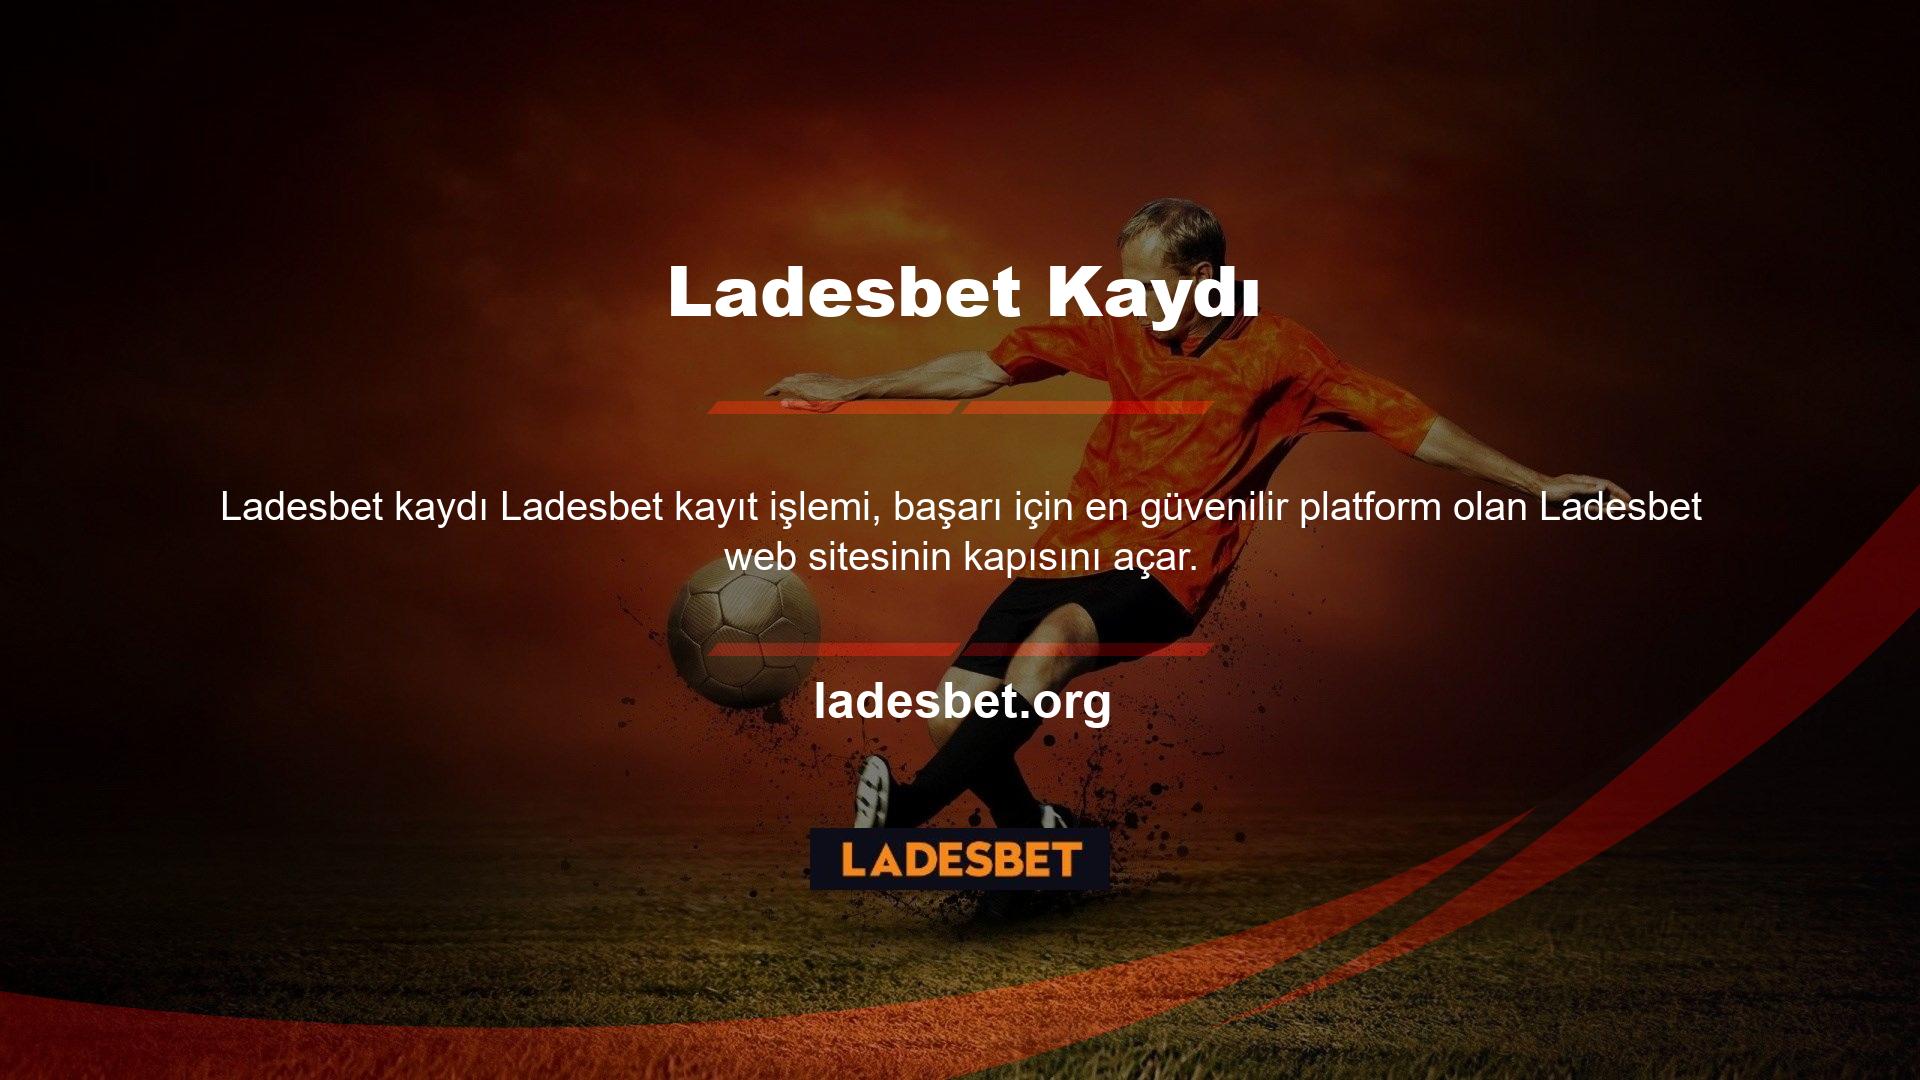 Ladesbet, spor oyunları, casinolar, canlı casino oyunları, zar oyunları ve diğer casino oyunları sunan çevrimiçi sitelerden biridir